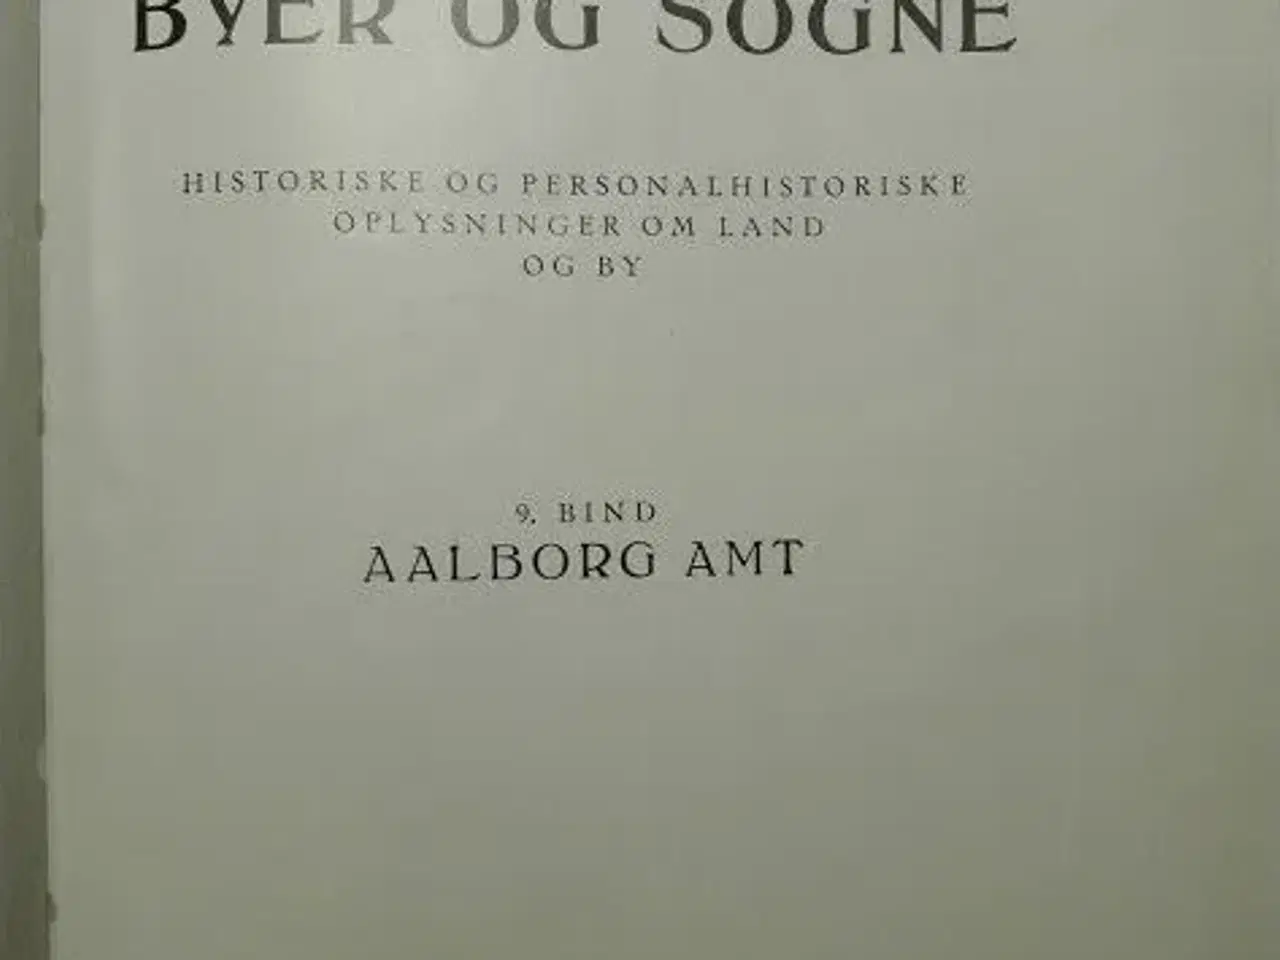 Billede 1 - Danske byer og Sogne. Aalborg Amt